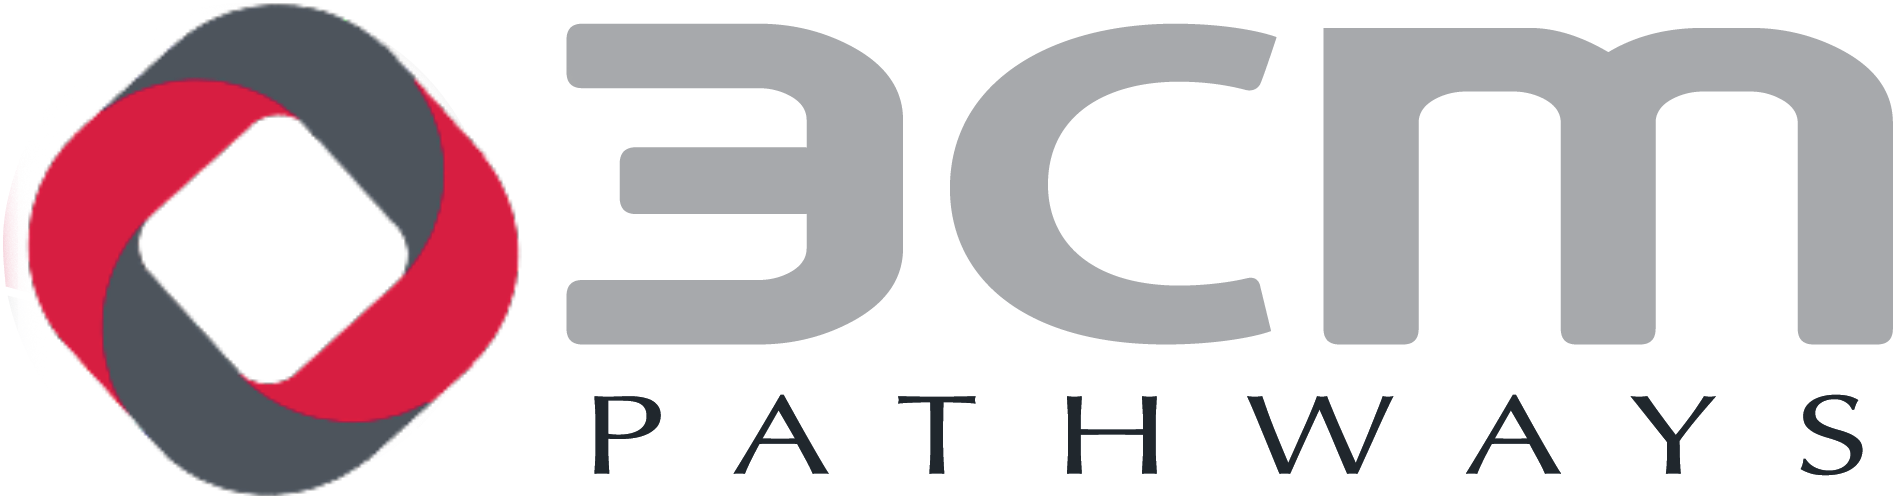 3cm pathways logo-14